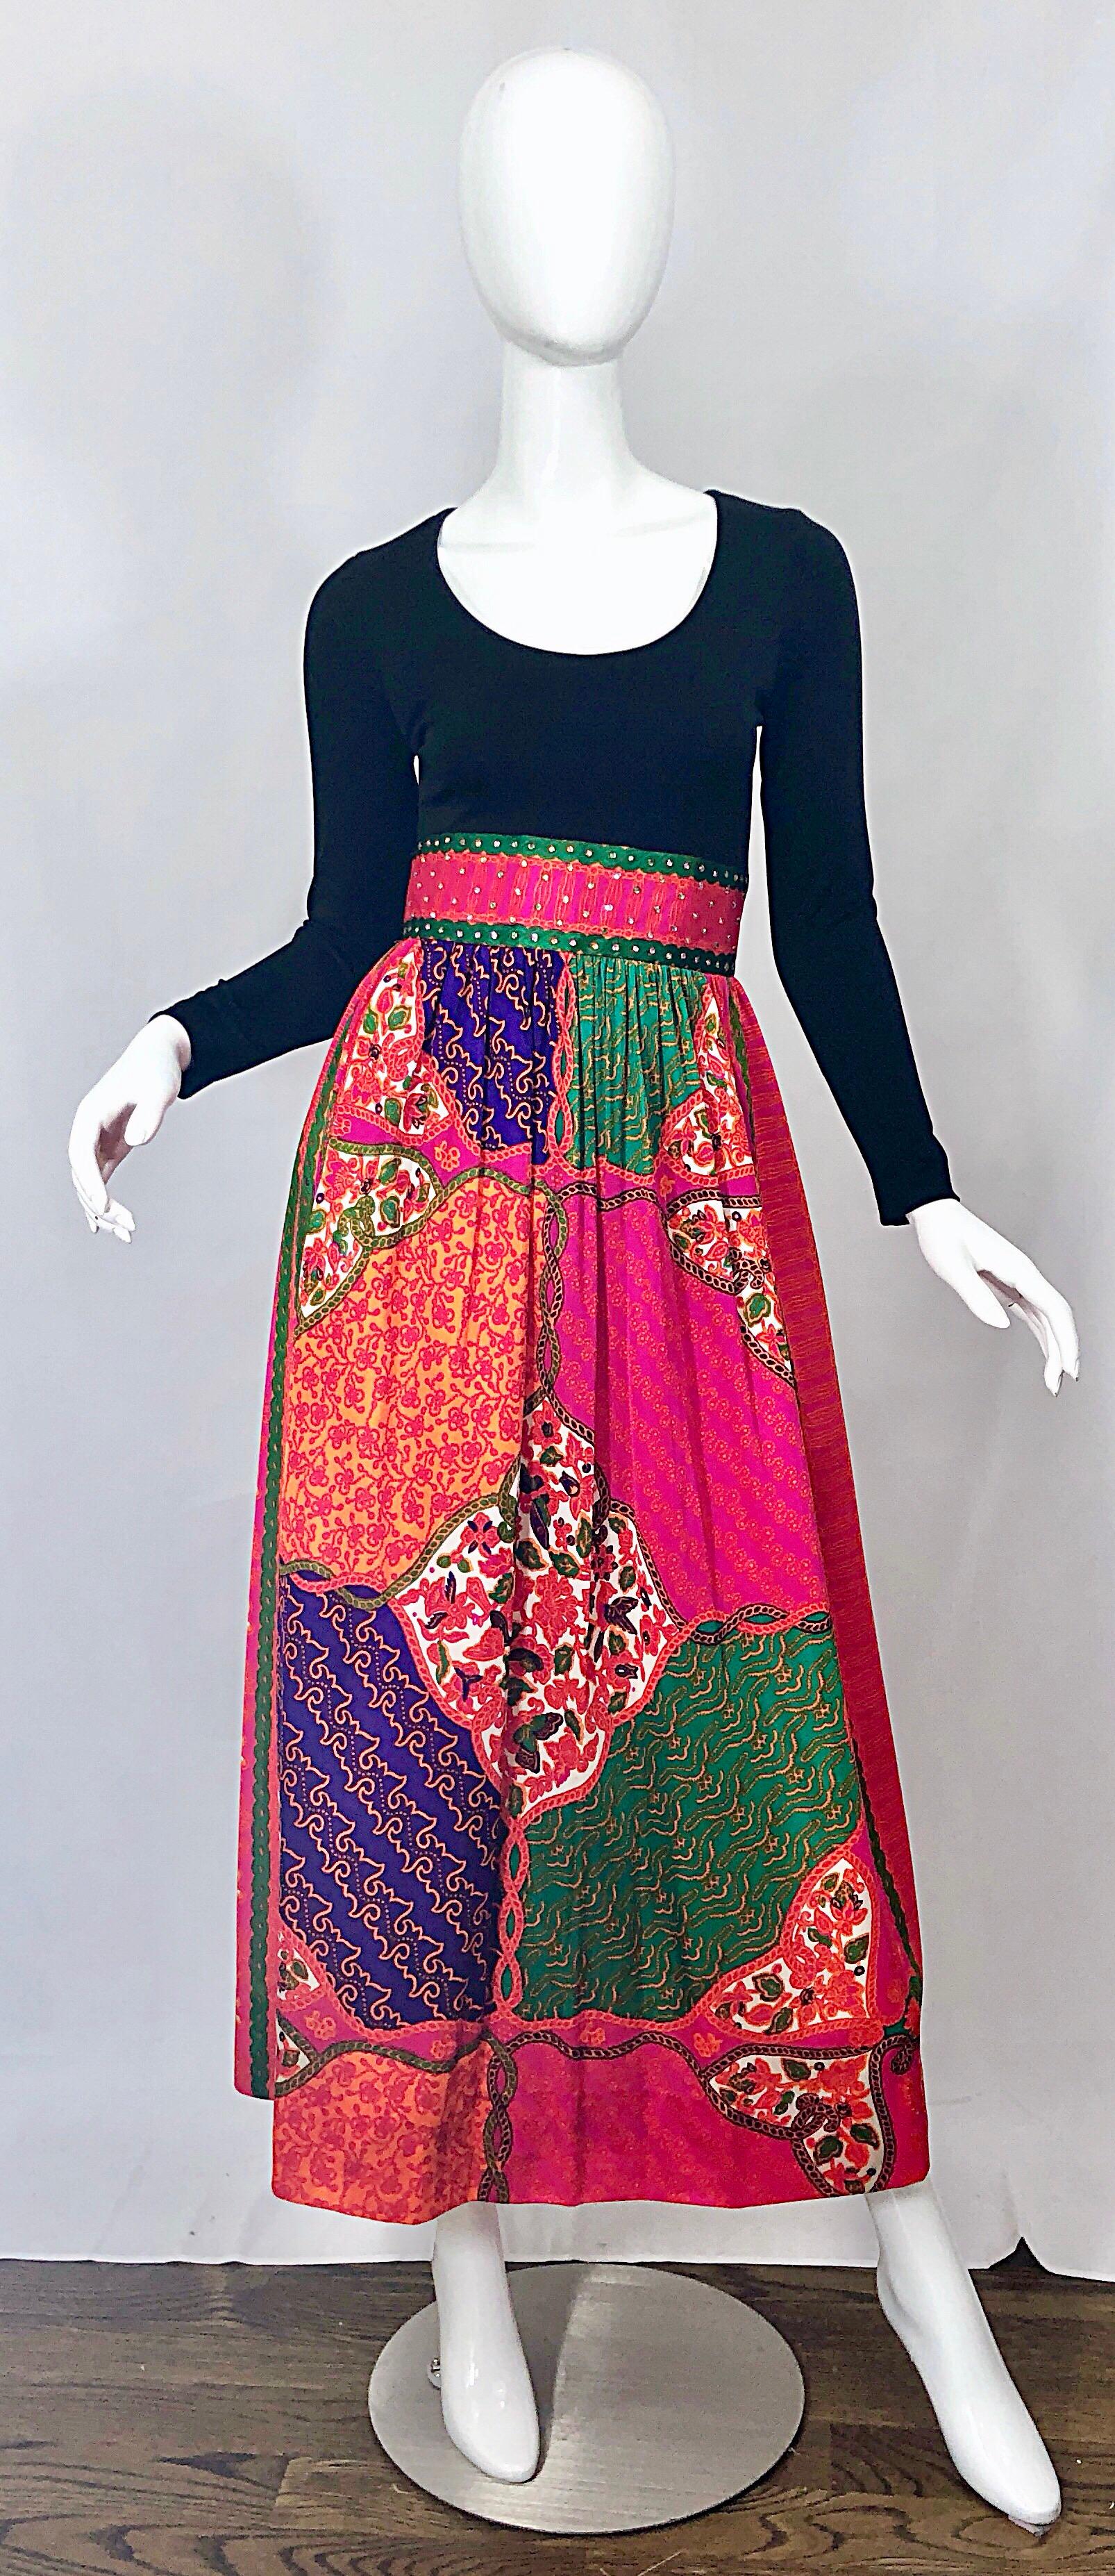 Superbe robe longue vintage des années 1970 en jersey imprimé patchwork multicolore incrusté de strass ! Le corsage en jersey noir à encolure dégagée est taillé sur mesure. Des dizaines de strass cousus à la main à la taille, avec une jupe longue